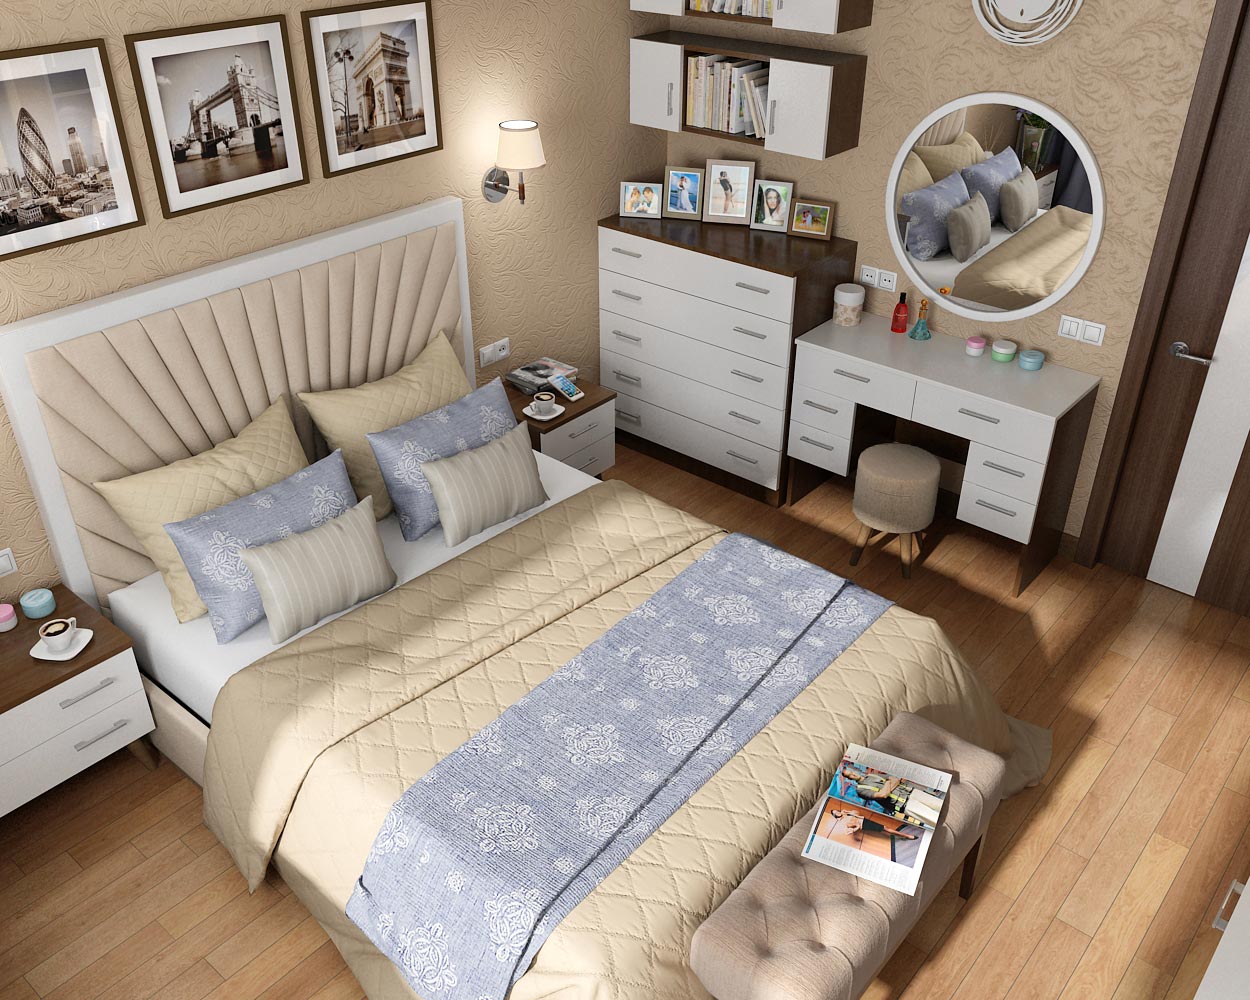 Innenarchitekturprojekt für ein Schlafzimmer in einer Wohnung in Chernigov in 3d max vray 1.5 Bild